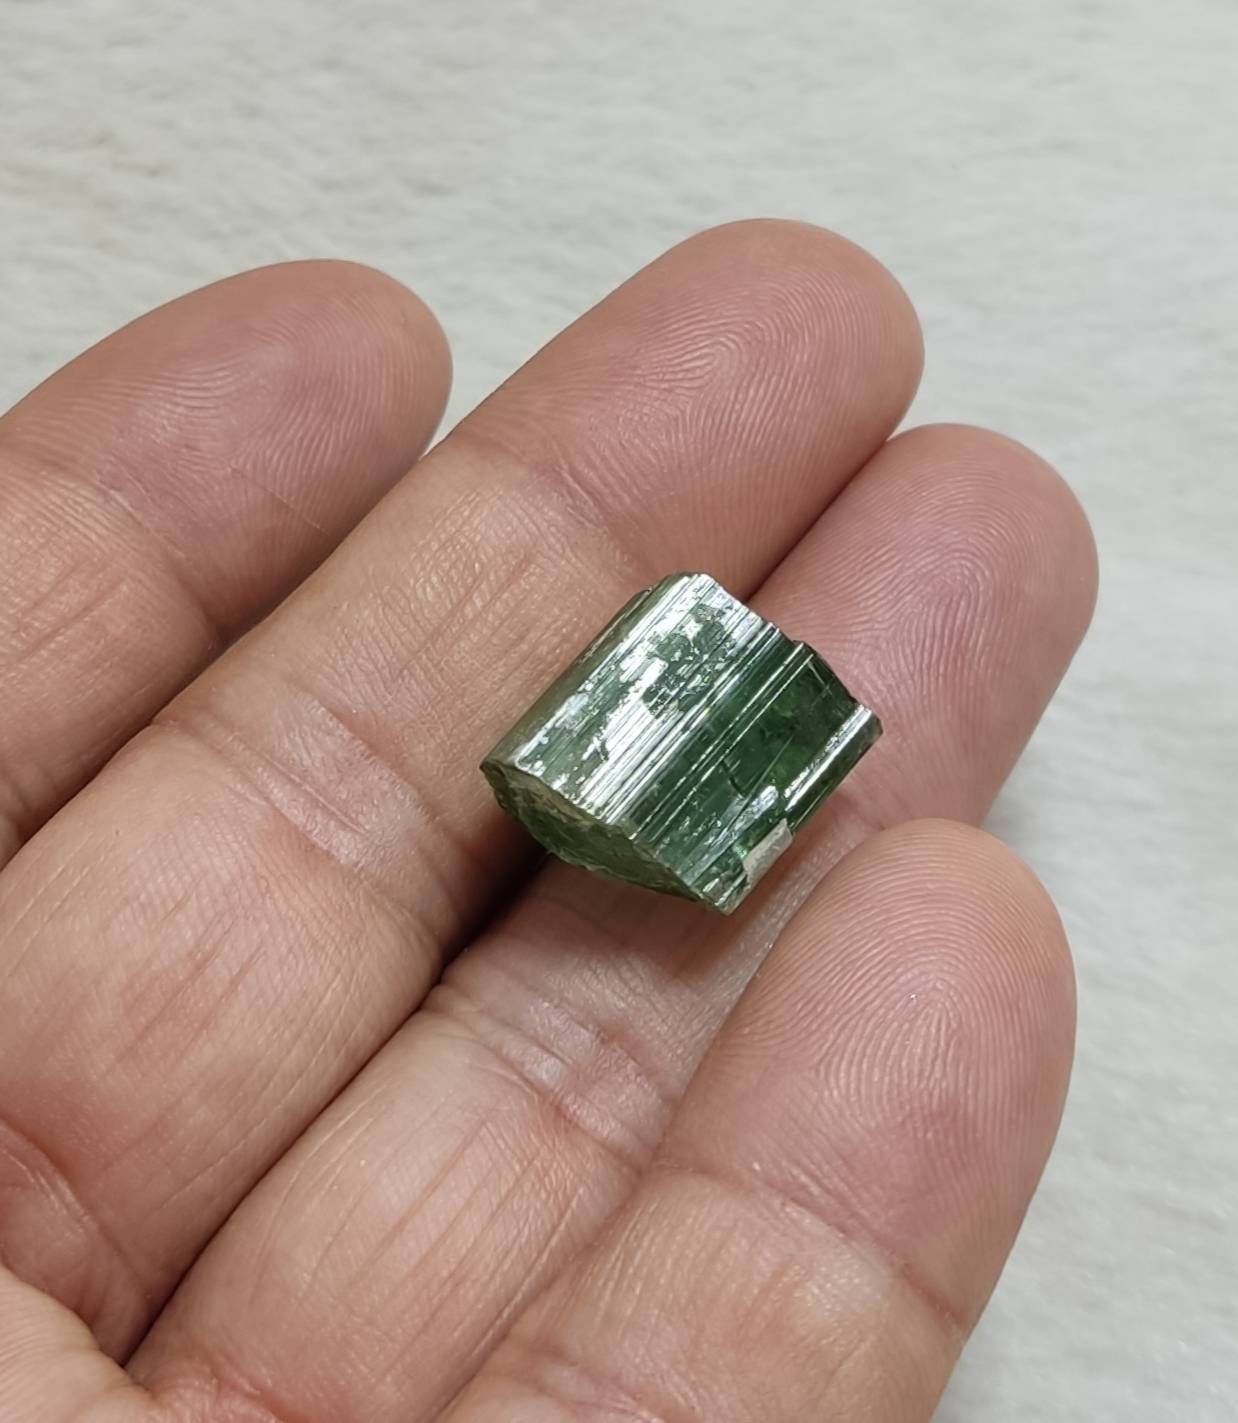 Green terminated Tourmaline crystal 30 carats